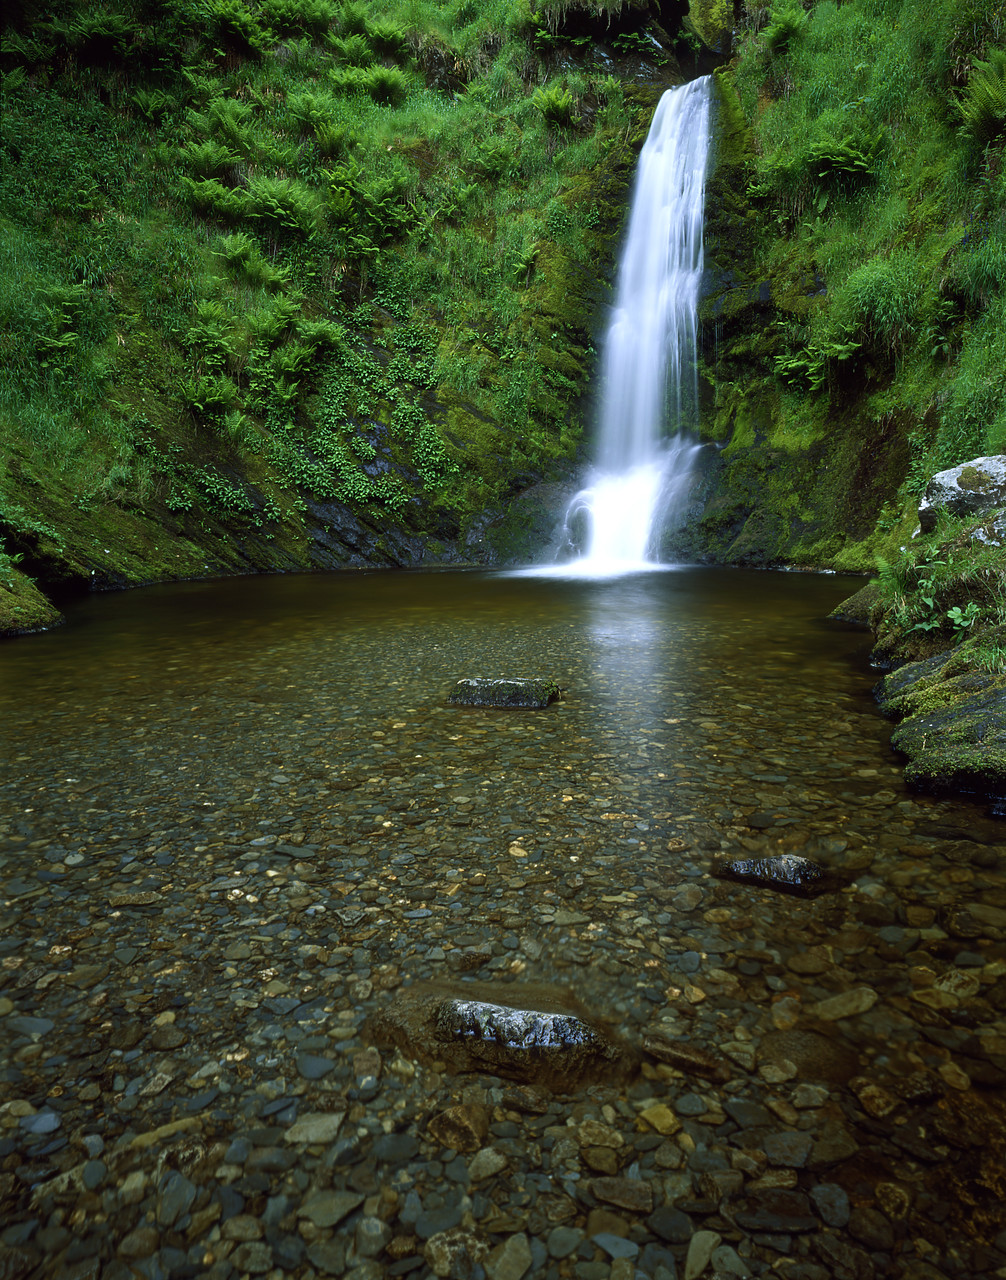 #040124-3 - Pistyll Rhaeadr Waterfall, near Llanrhaeadr ym Mochnant, Denbighshire, Wales